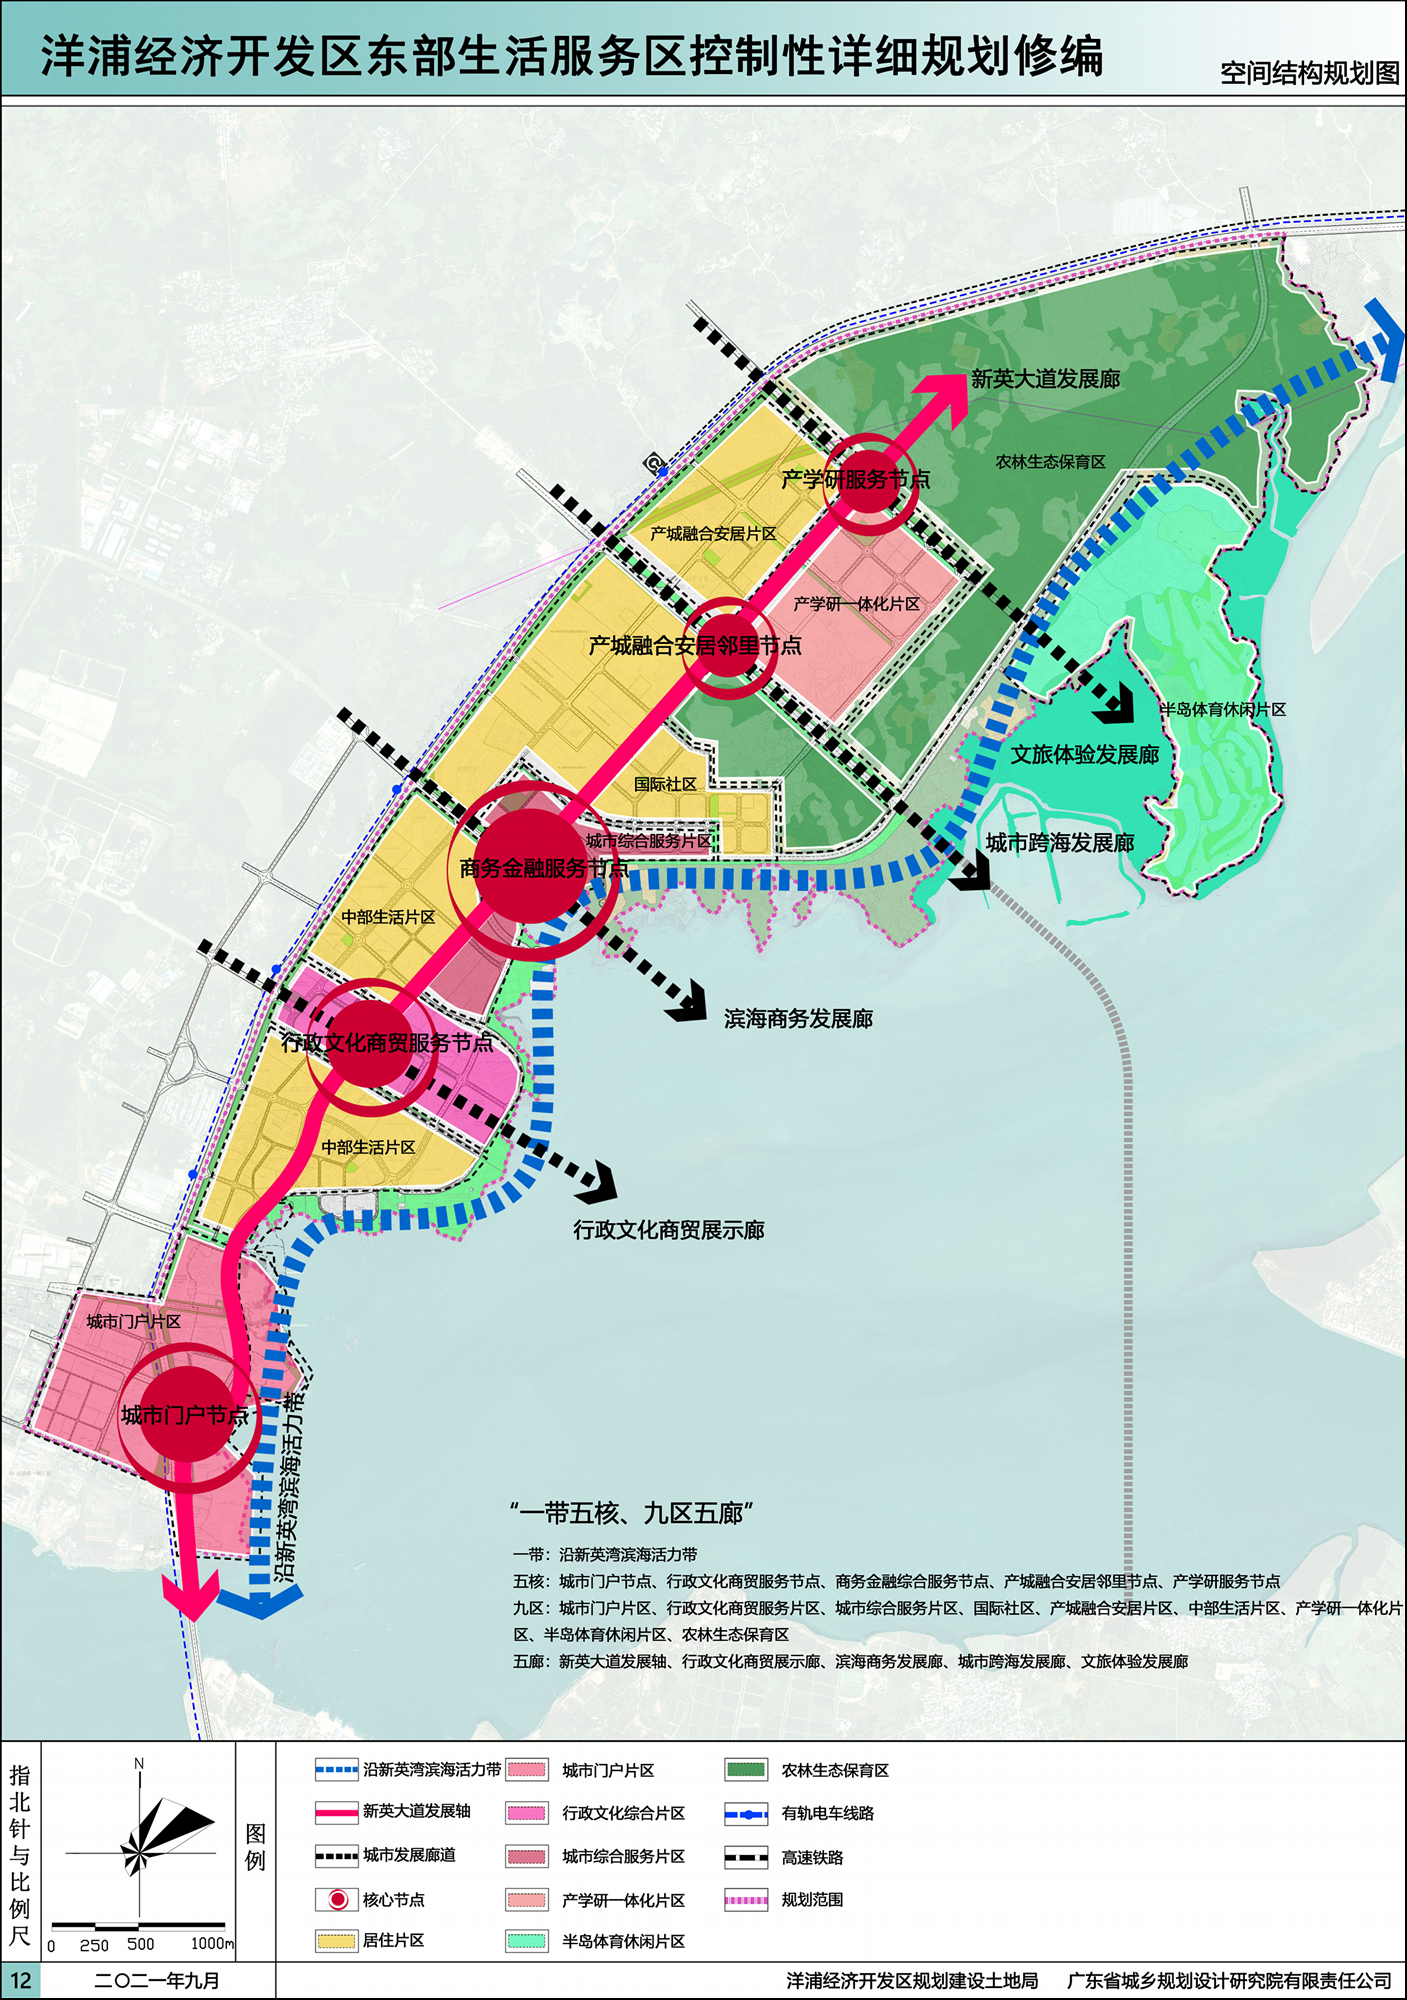 南至洋浦大桥,西至开源大道和吉浦路,北至三都区和木棠镇交界线,规划